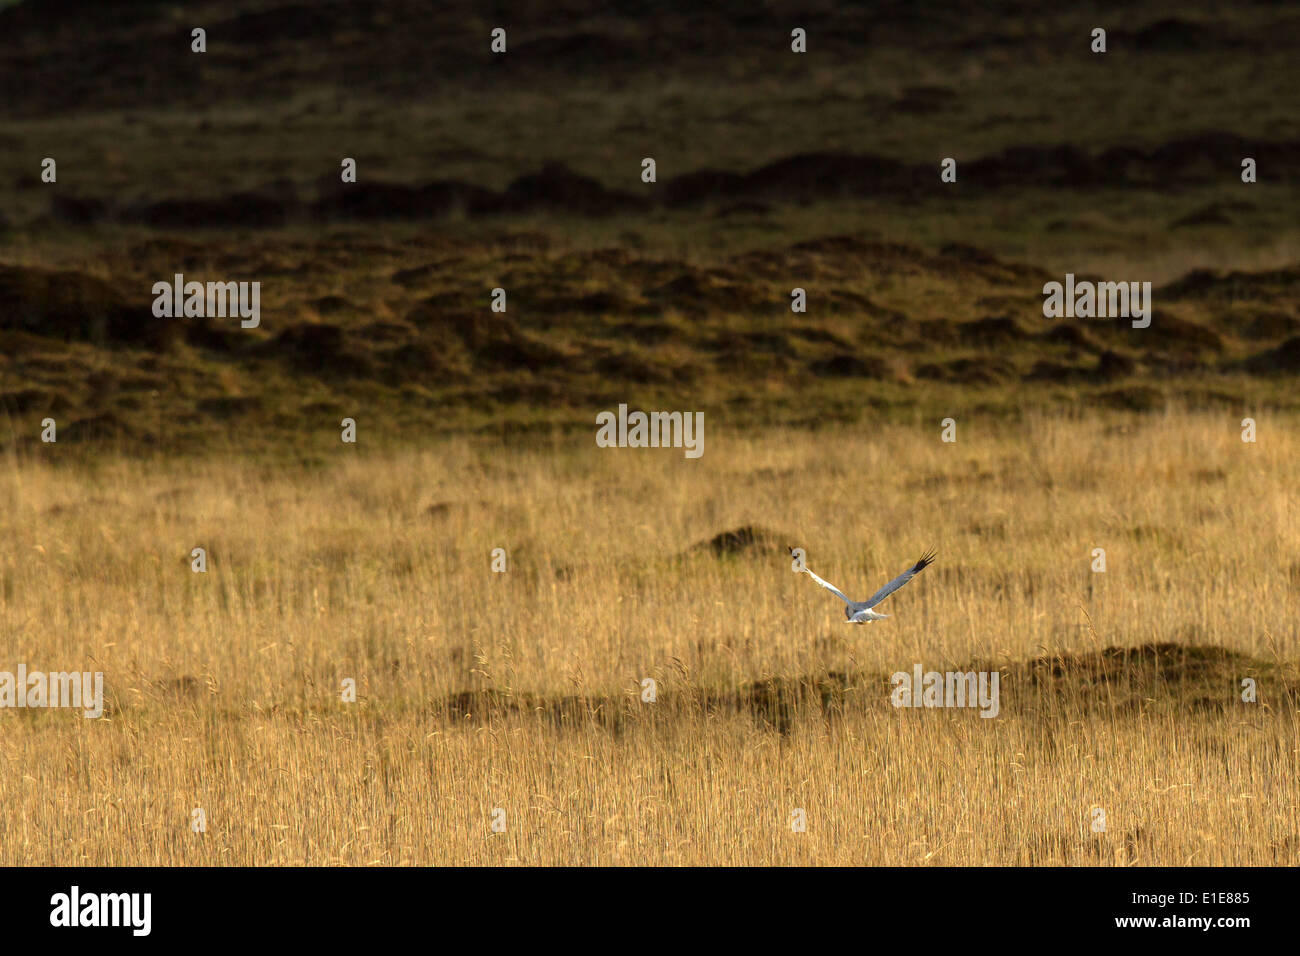 Male Busard Saint-Martin (Circus cyaneus) la chasse dans les landes son habitat. North Uist, îles Hébrides, Ecosse, Royaume-Uni Banque D'Images